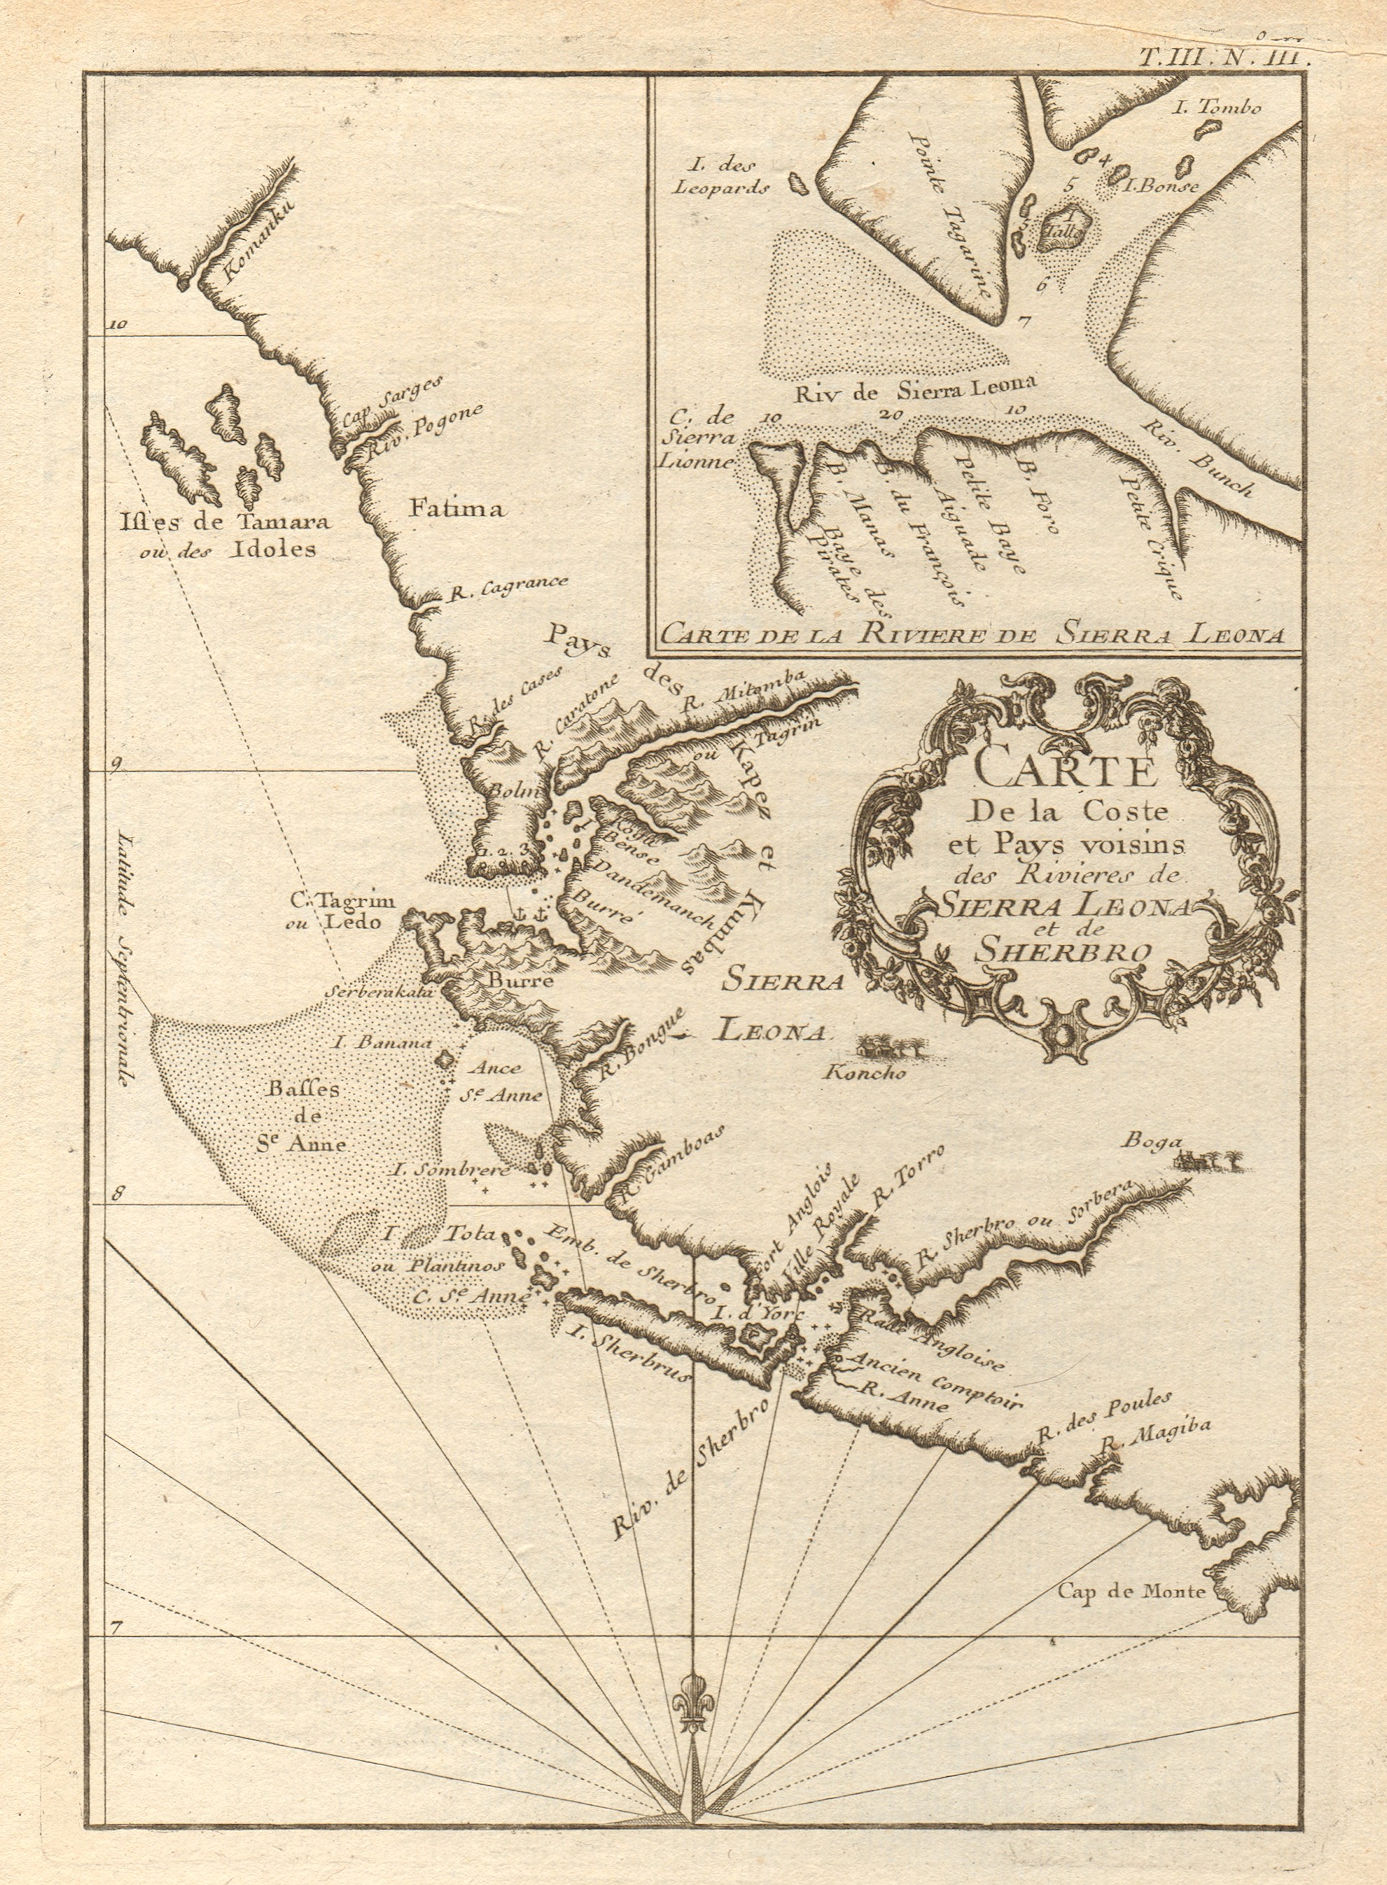 Associate Product 'Coste… des Rivières de Sierra Leona & Scherbro'. Sierra Leone. BELLIN 1747 map